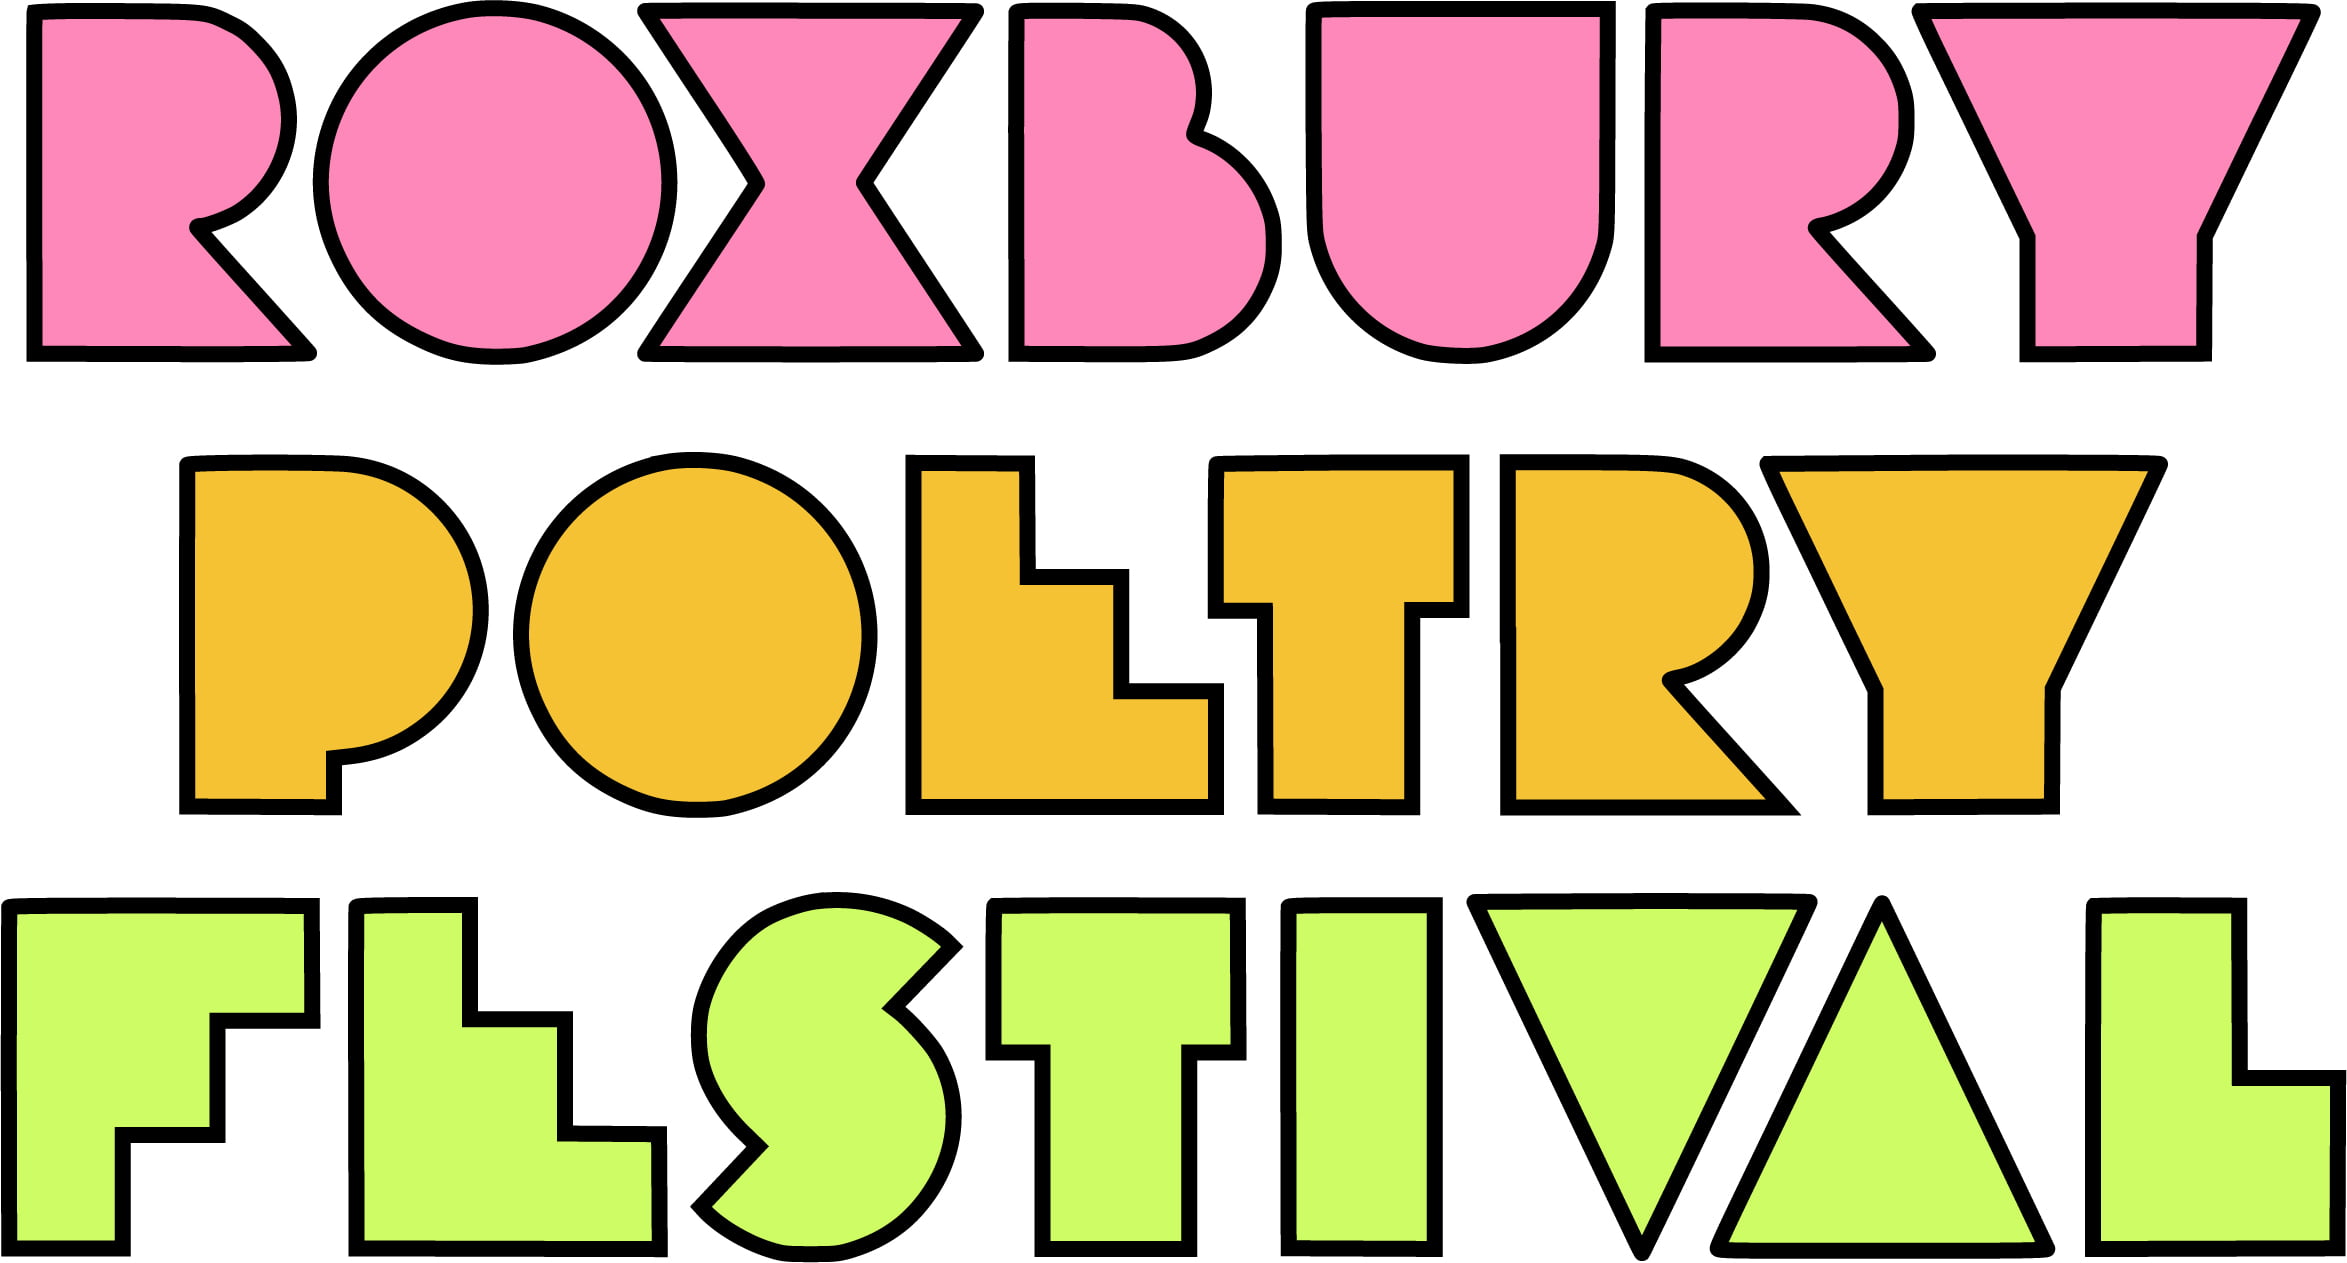 Roxbury Poetry Festival